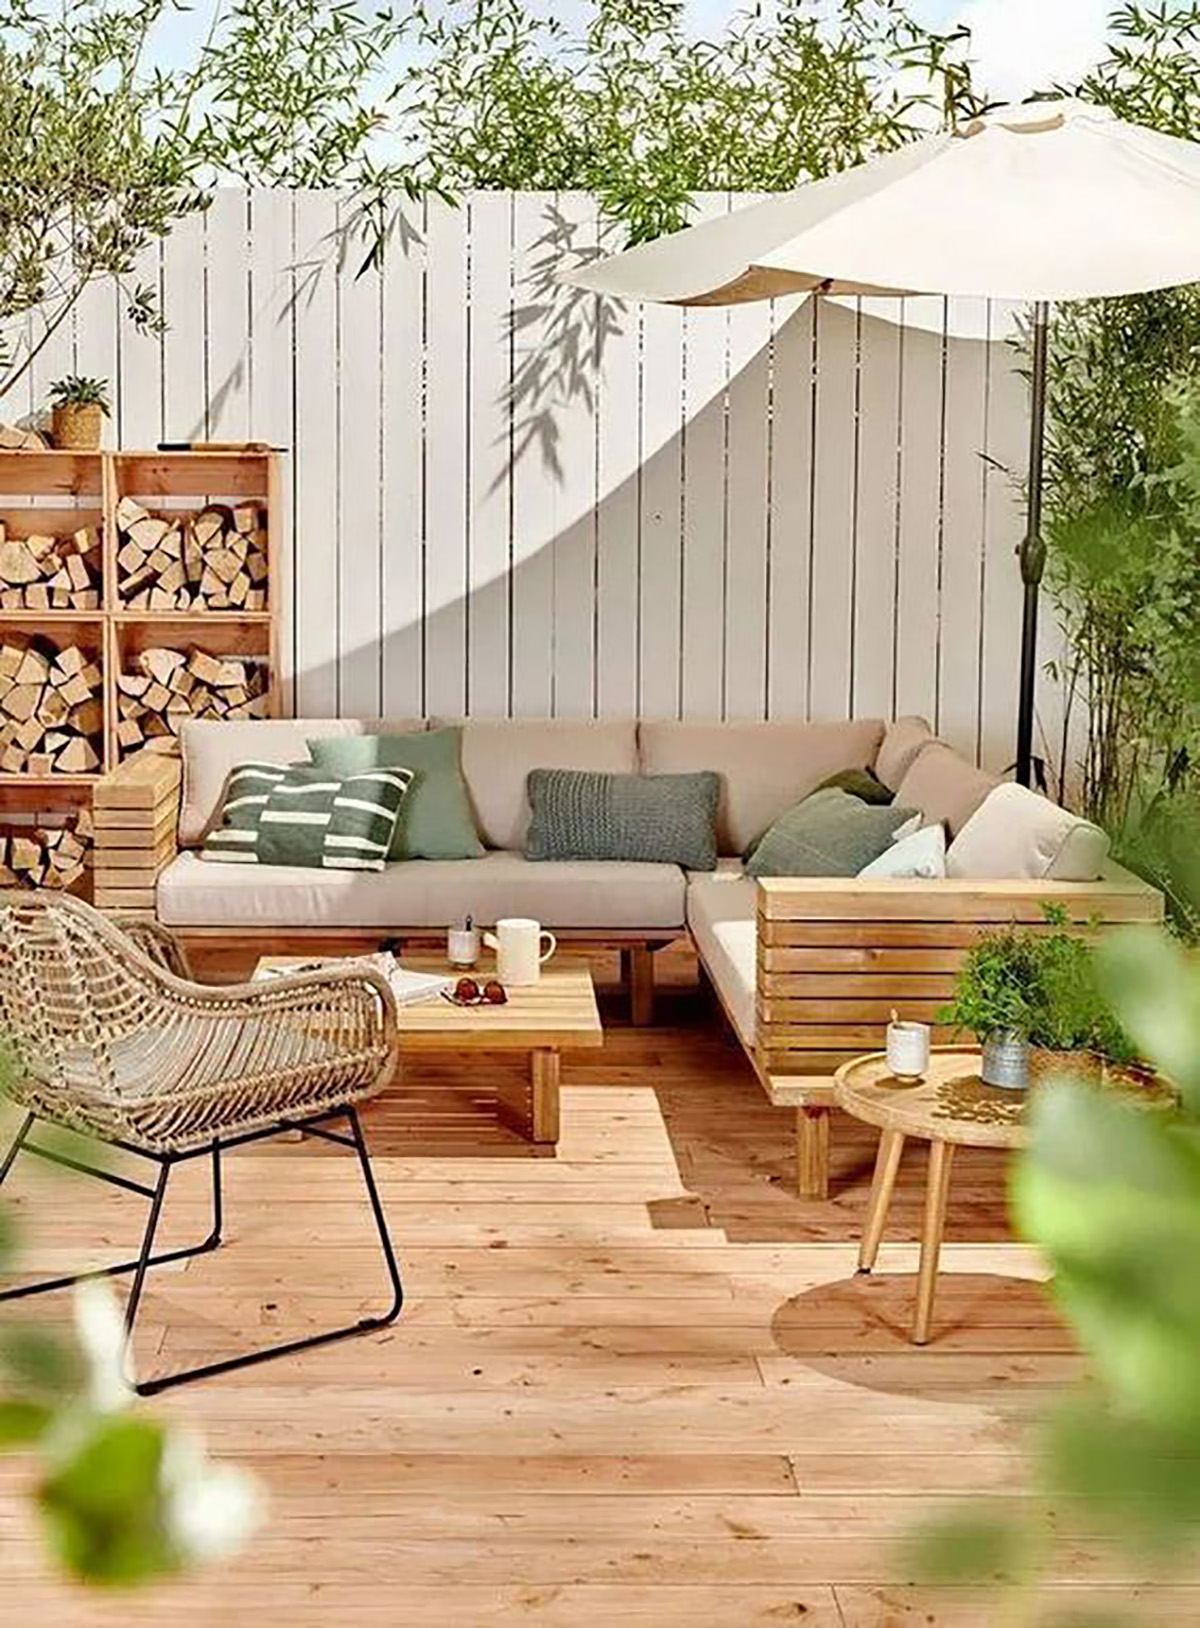 sancilio evotech molfetta - forniture outdoor mobili arredamento giardino poltrone divani complementi lounge sostenibilità